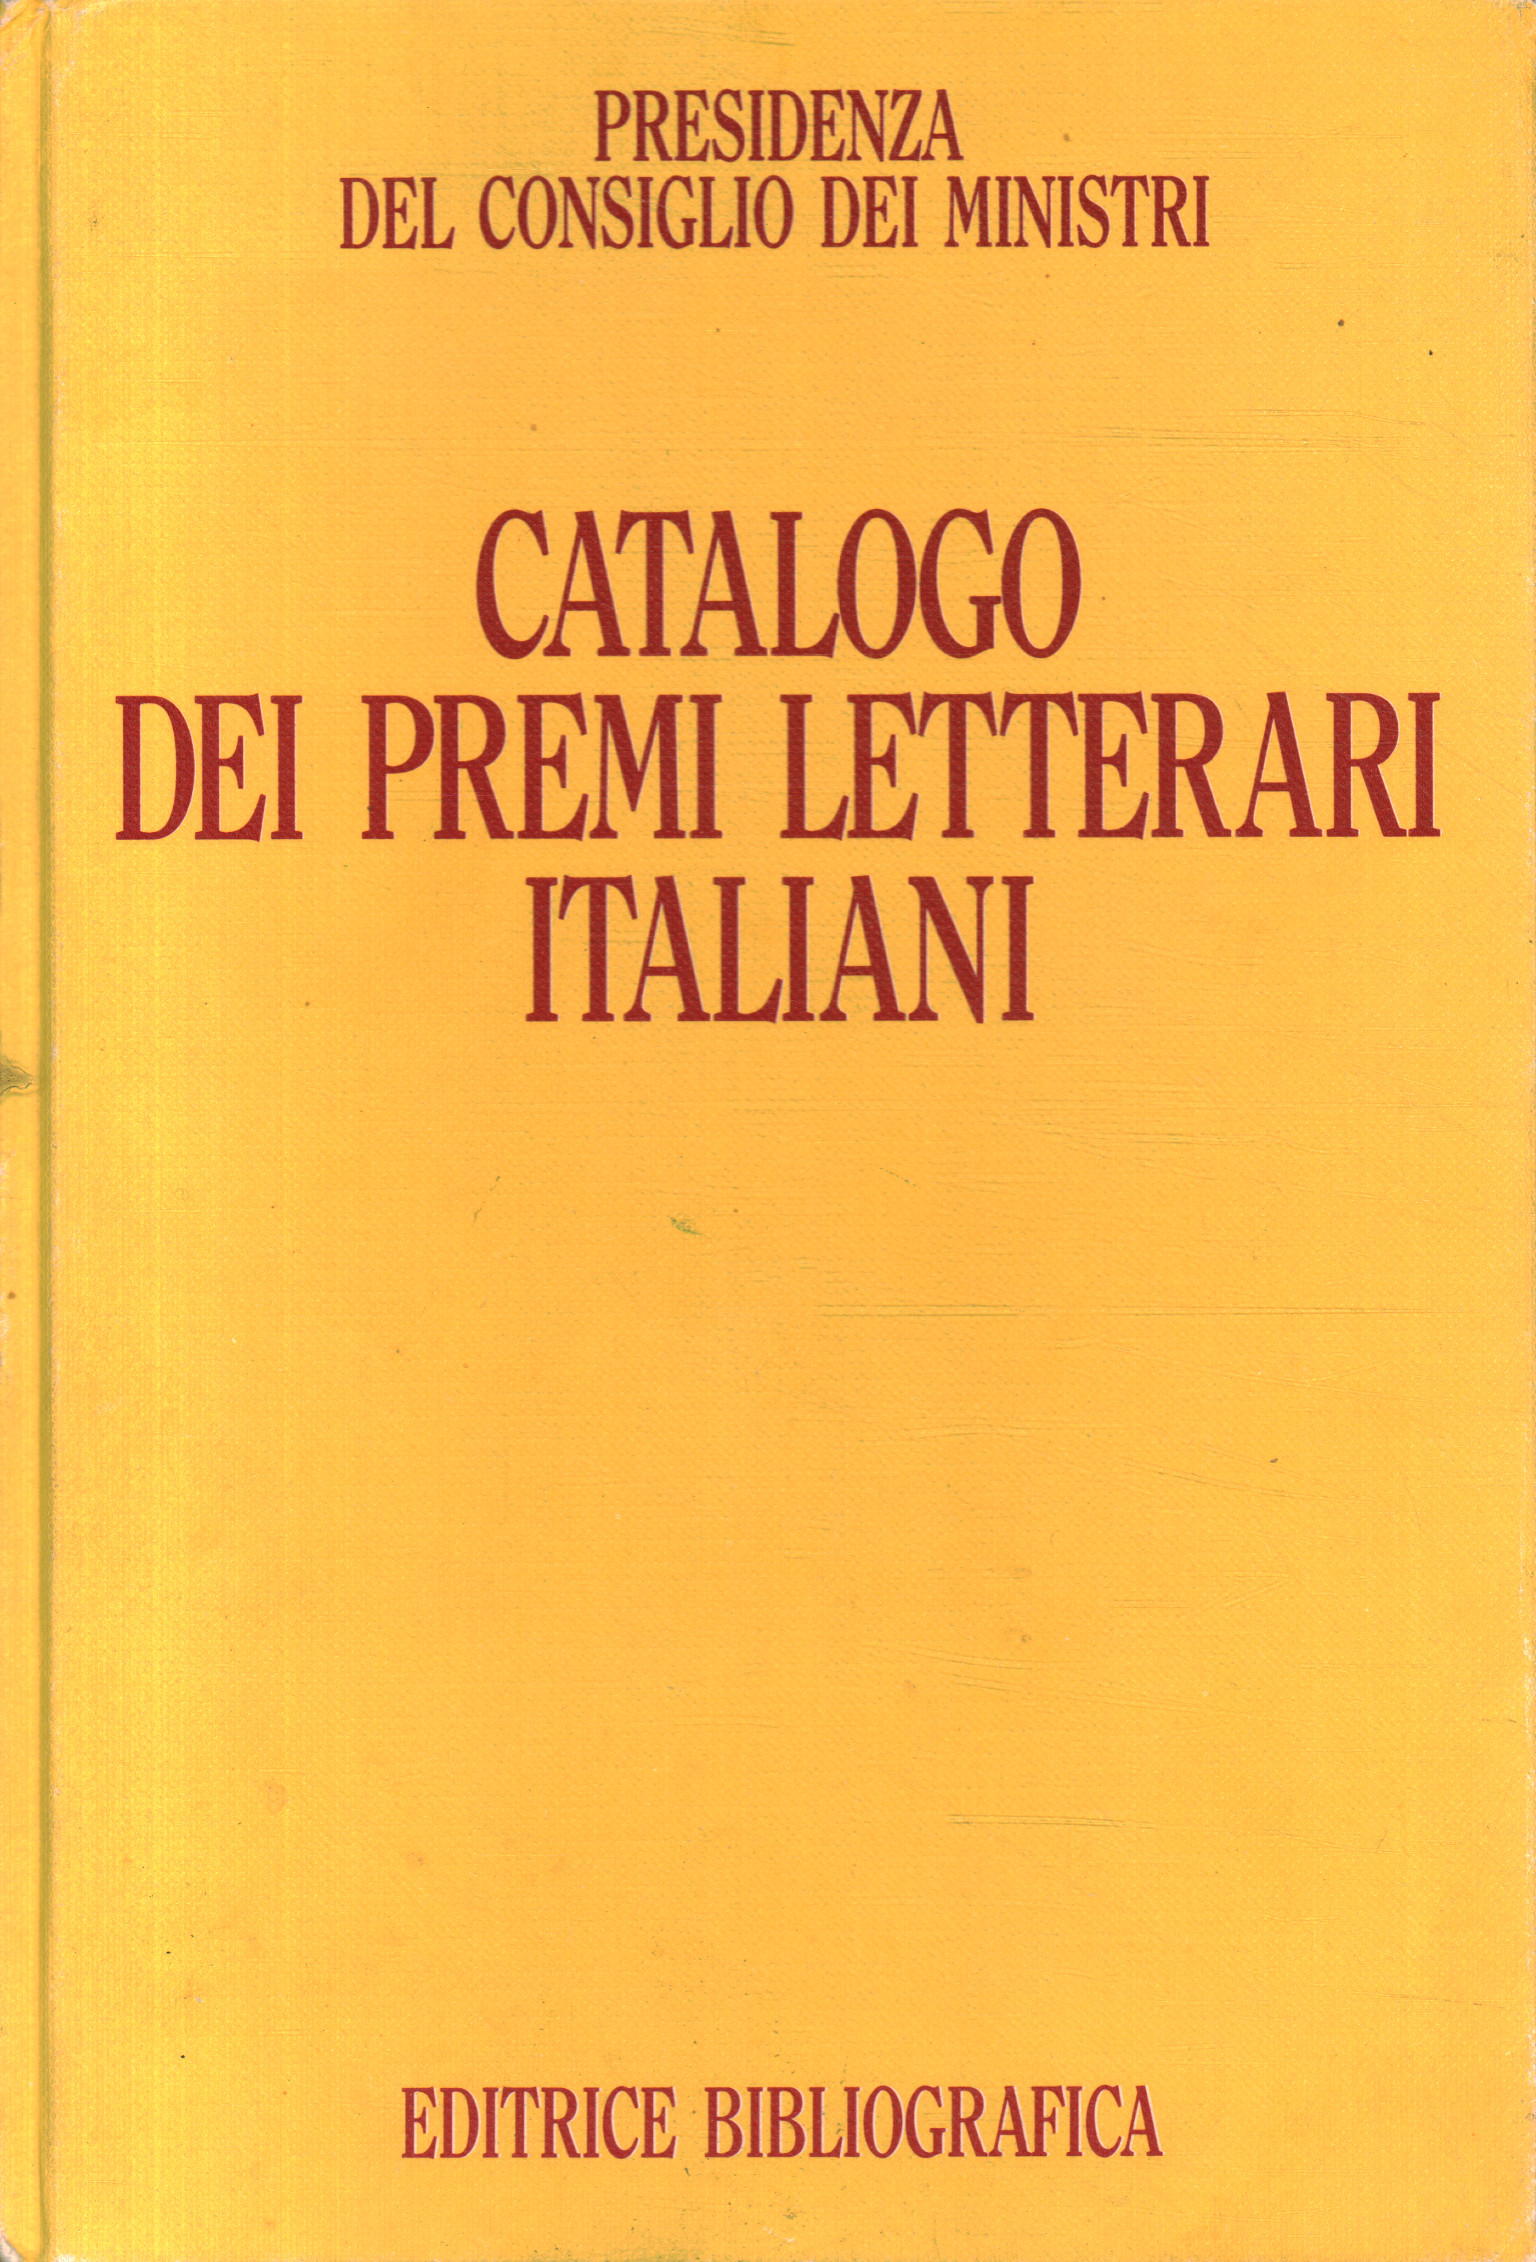 Catalog of Italian literary awards